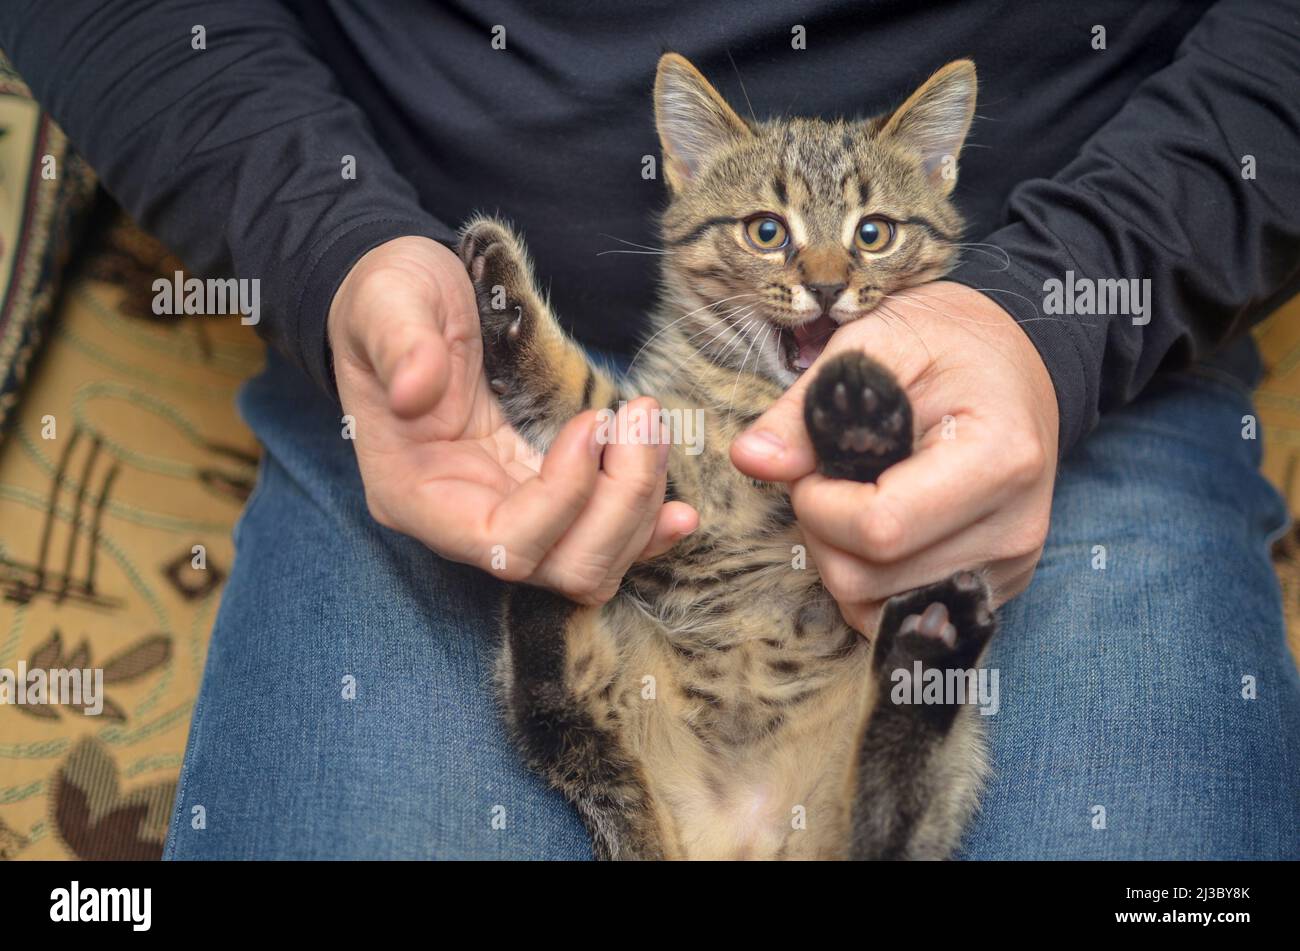 pet concept - giocoso gattino tabby si trova sulle ginocchia di un uomo senza volto senza volto. Foto Stock